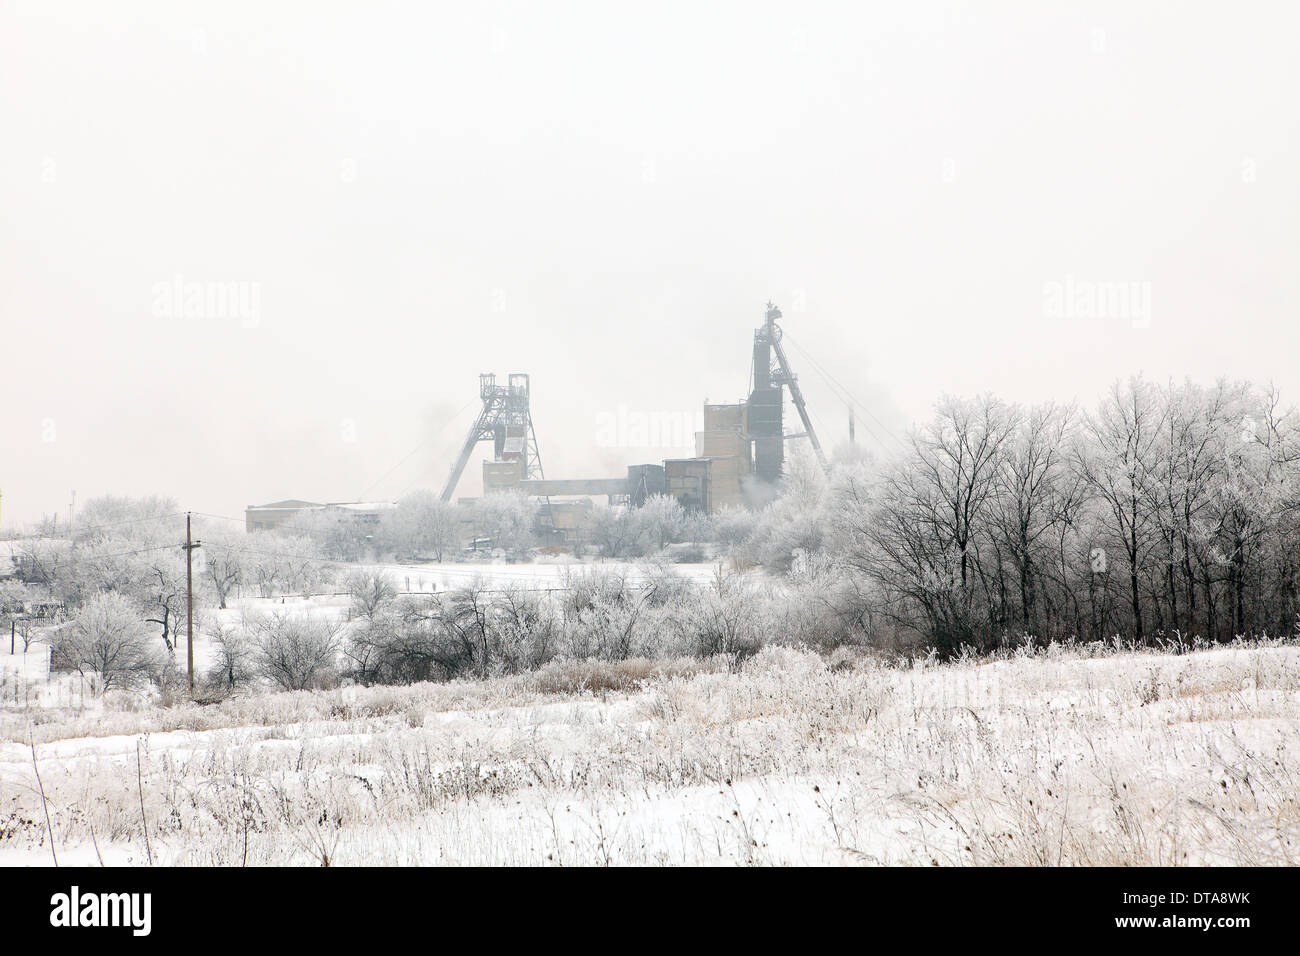 Miniera di carbone in inverno, Donbass. Regione di Donetsk, Ucraina. Foto Stock